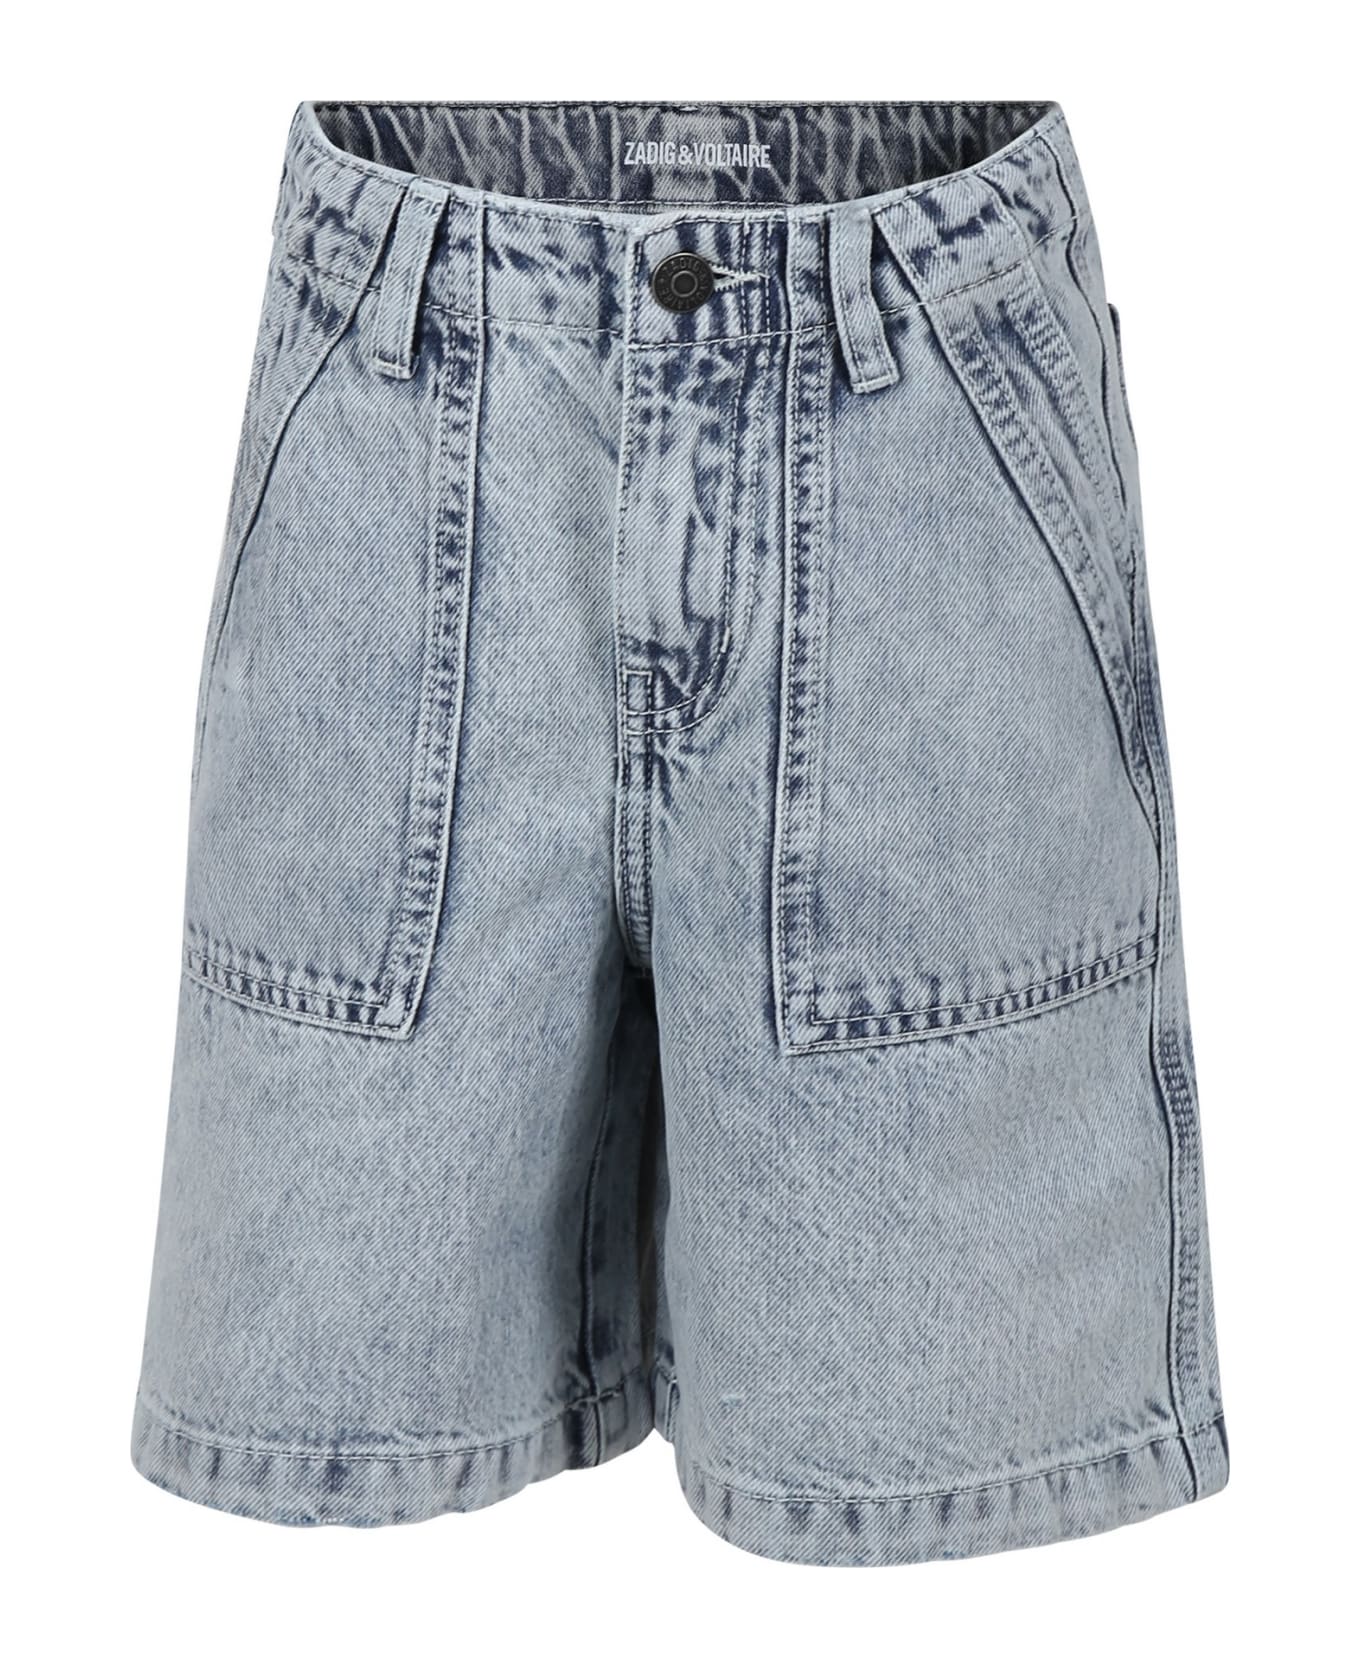 Zadig & Voltaire Denim Shorts For Boy - Denim